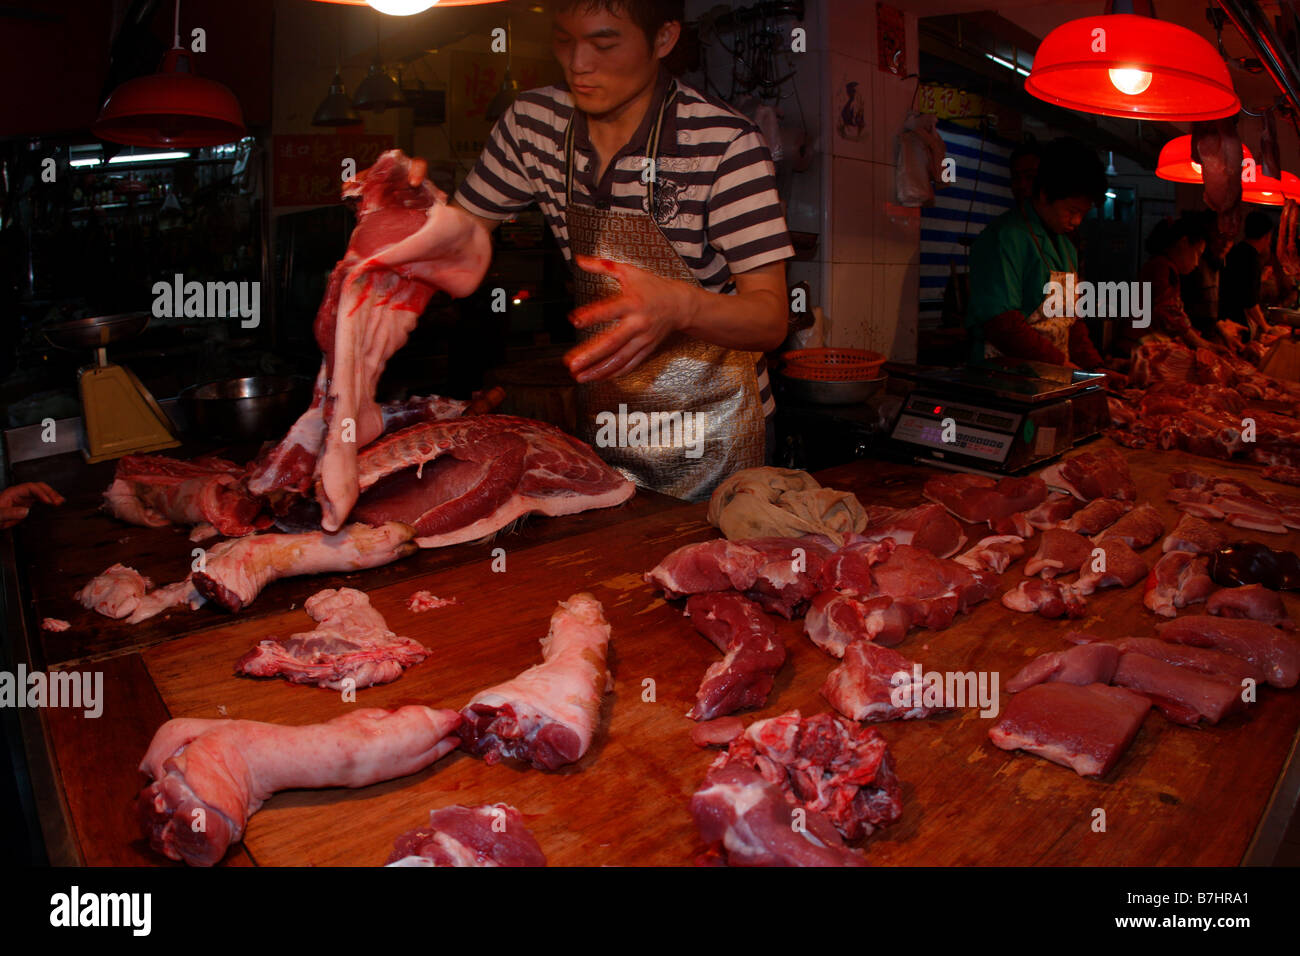 La gripe aviar China comida China la carne Carne de cerdo Foto de stock